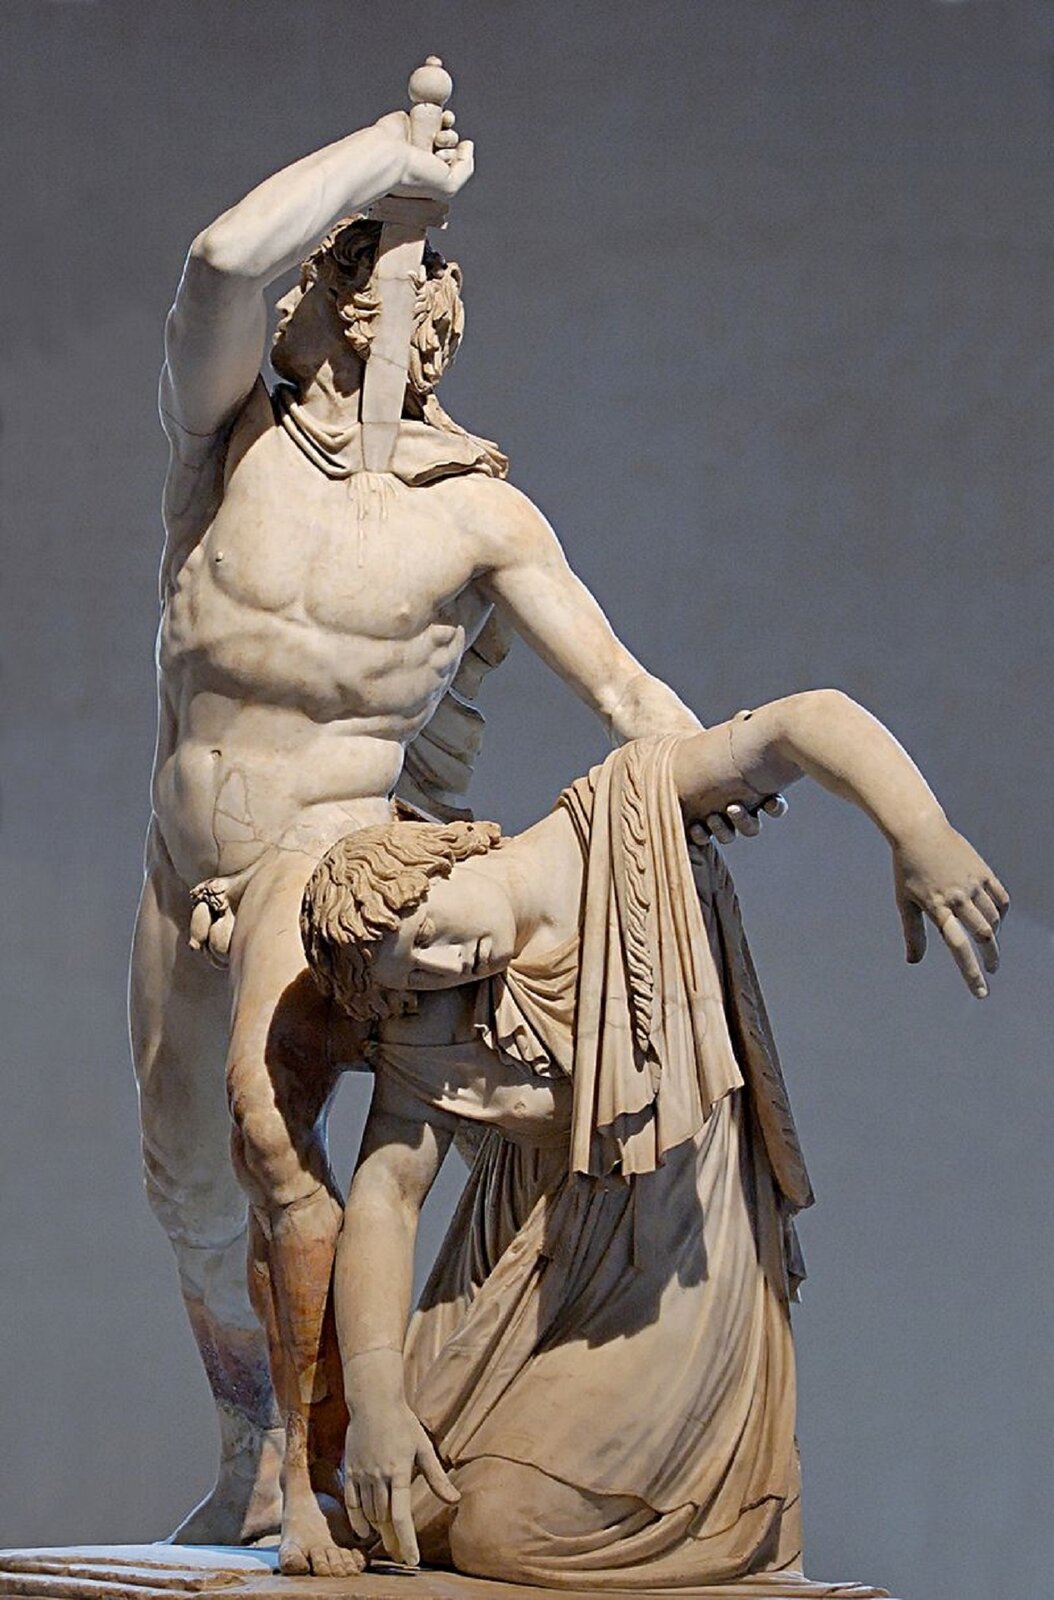 Ilustracja przedstawia rzeźbę „Gal zabijający żonę” nieznanego autora, znajdującą się w Muzeum we Florencji. Rzeźba ukazuje nagie ciało muskularnego mężczyzny, wbijającego sobie w pierś sztylet. Mężczyzna w jednej ręce trzyma osuwającą się na ziemie kobietę.